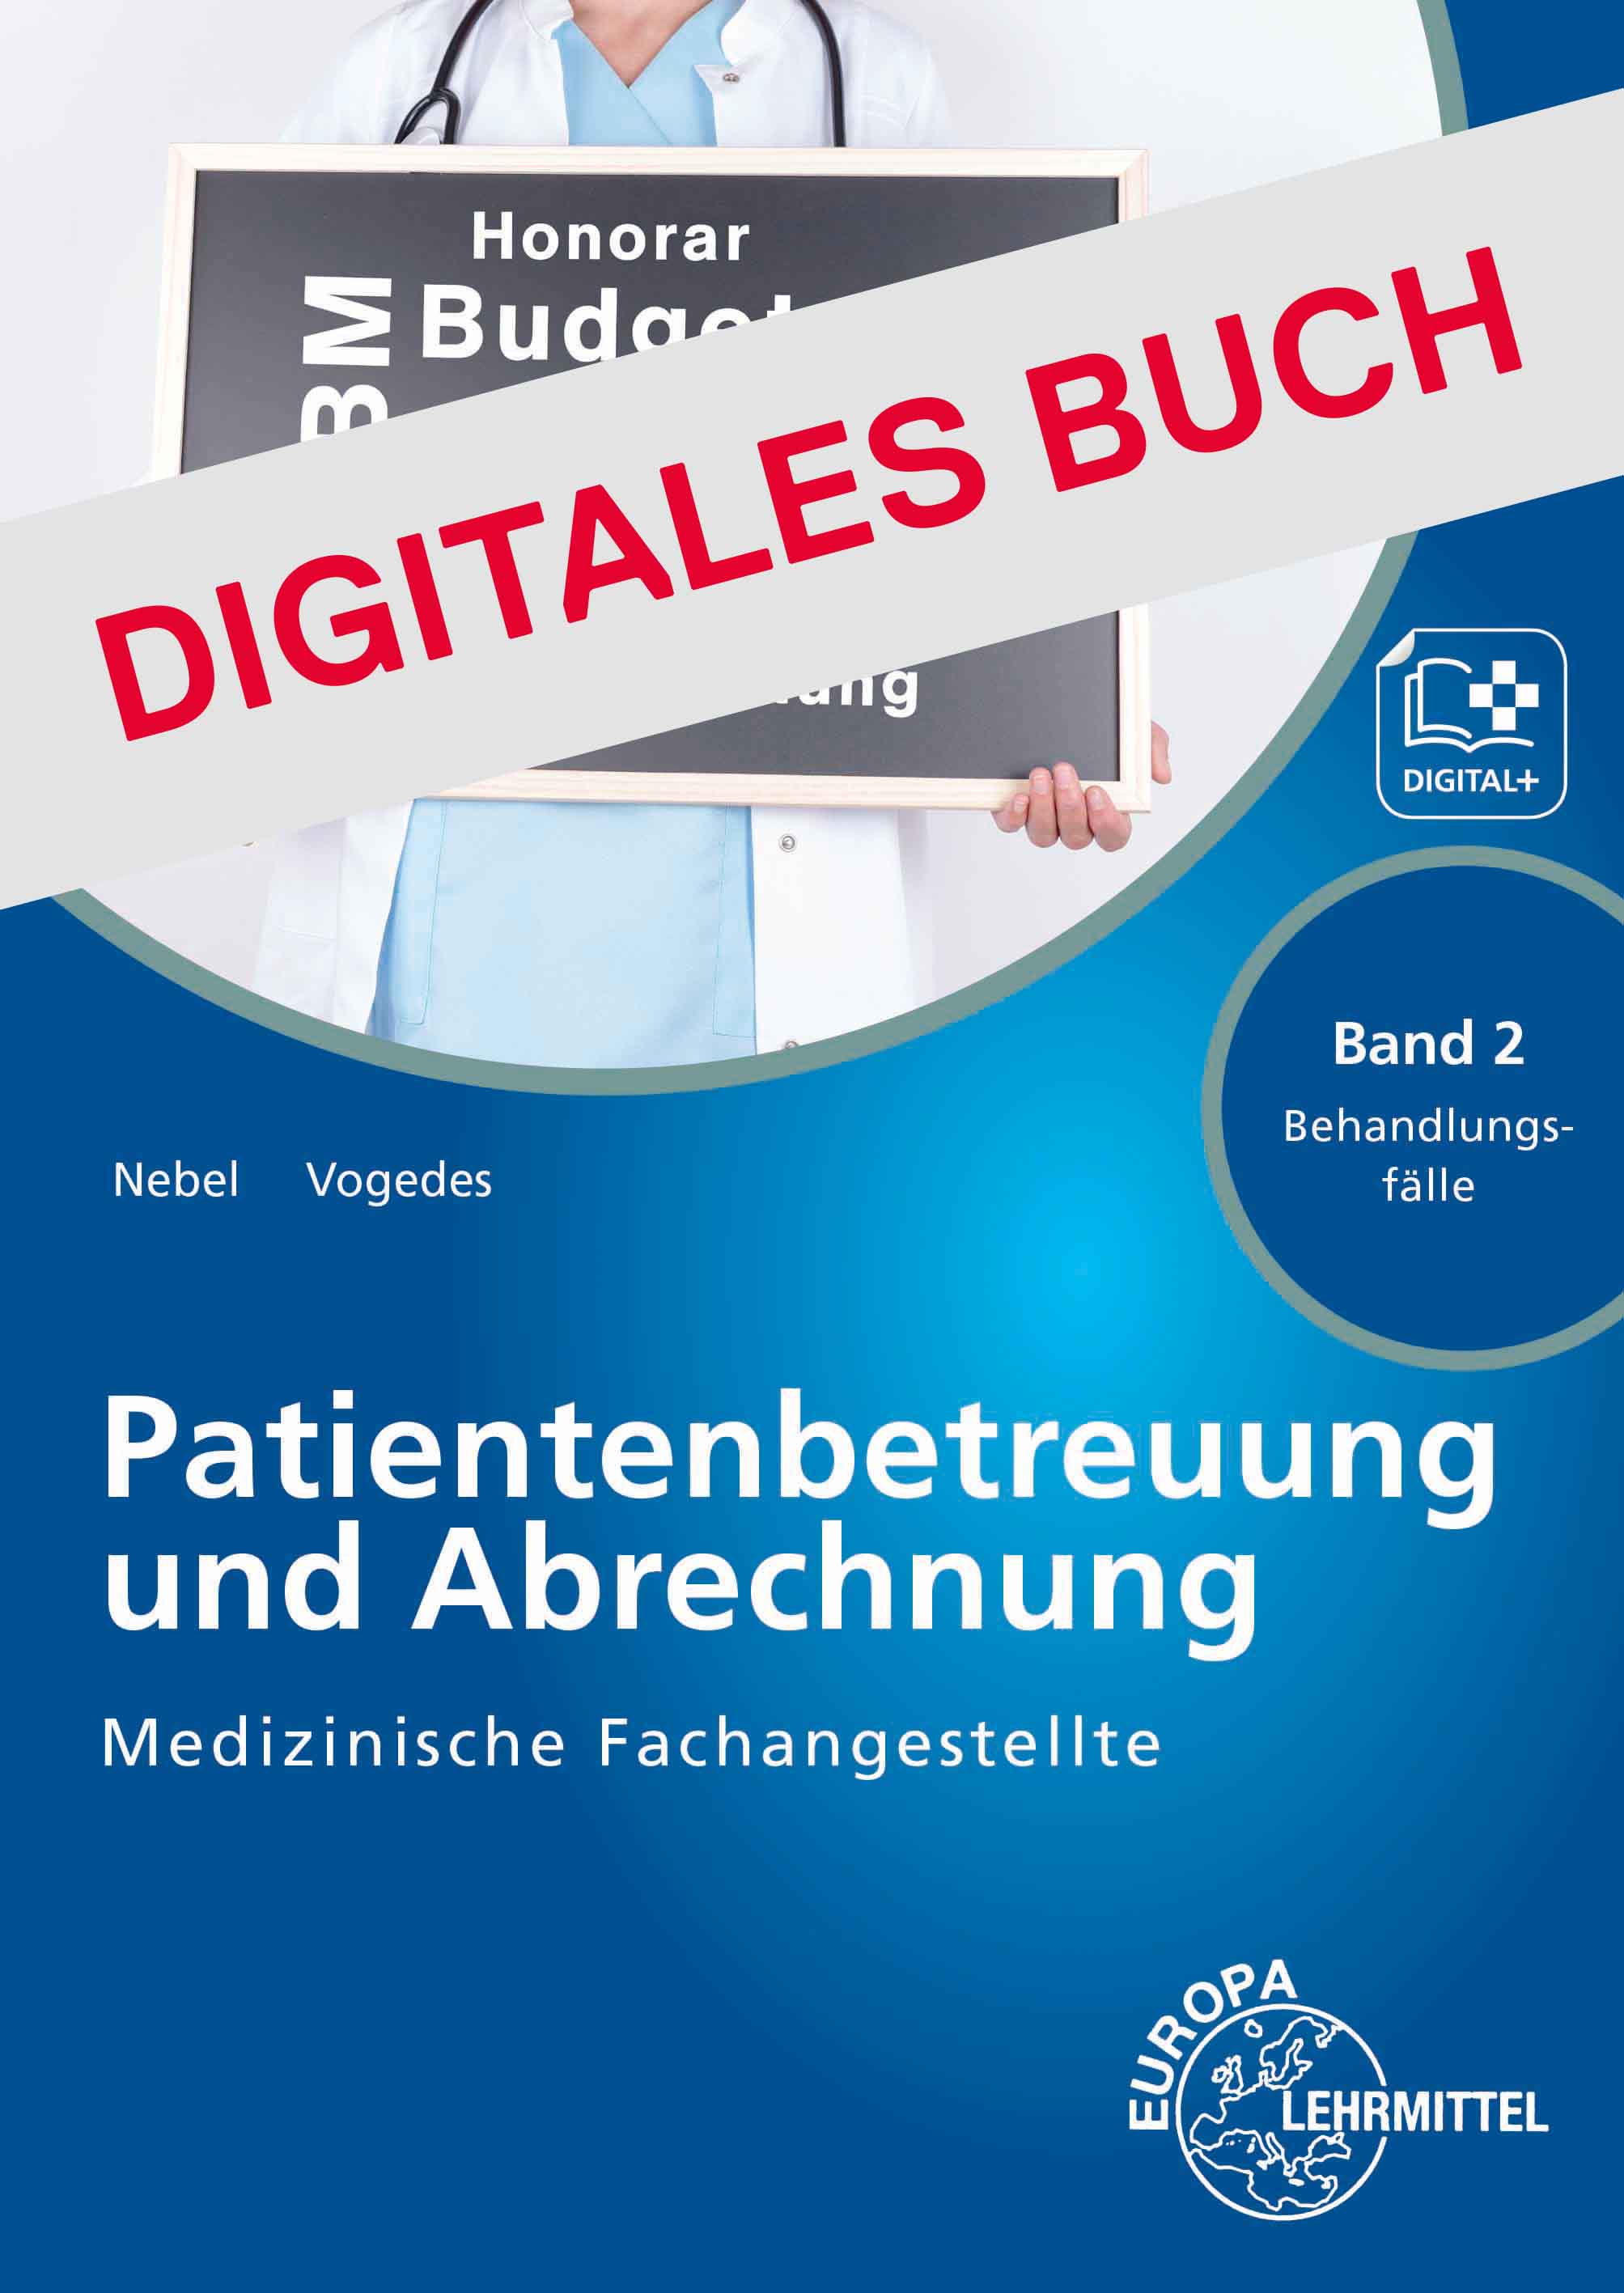 MFA Patientenbetreuung und Abrechnung Band 2 Behandlungsfälle - Digitales Buch